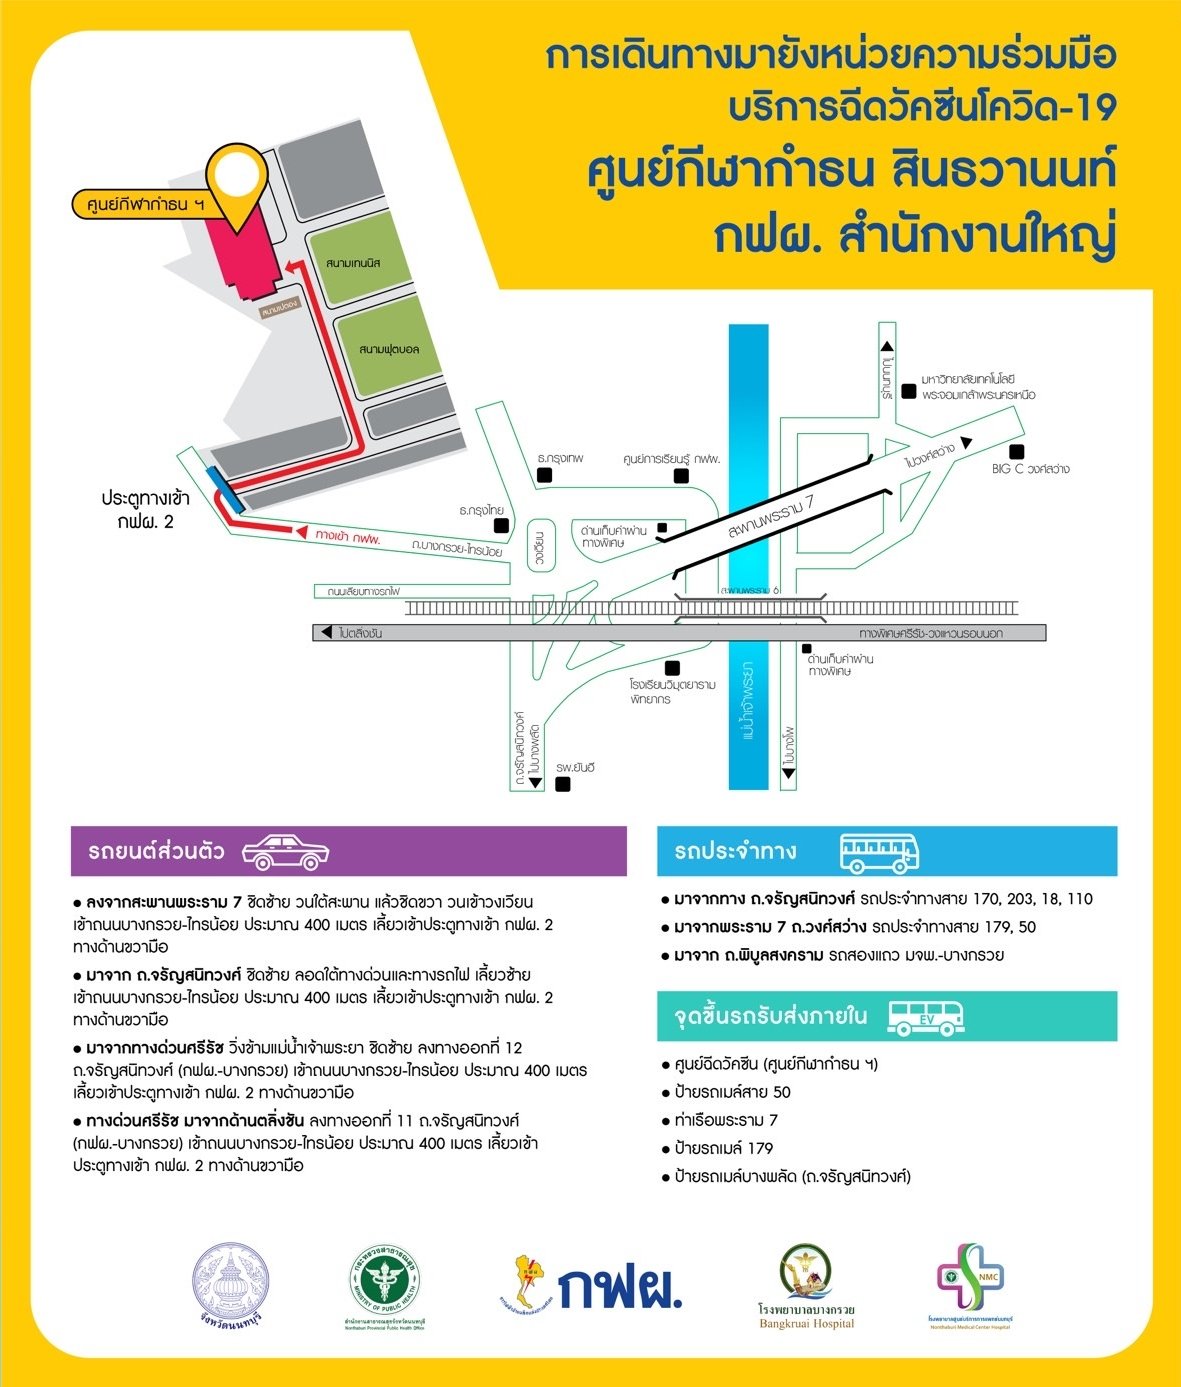 แผนที่ การเดินทาง ไปศูนย์กีฬากำธน สินธวานนท์ การไฟฟ้าฝ่ายผลิตแห่งประเทศไทย (บางกรวย)